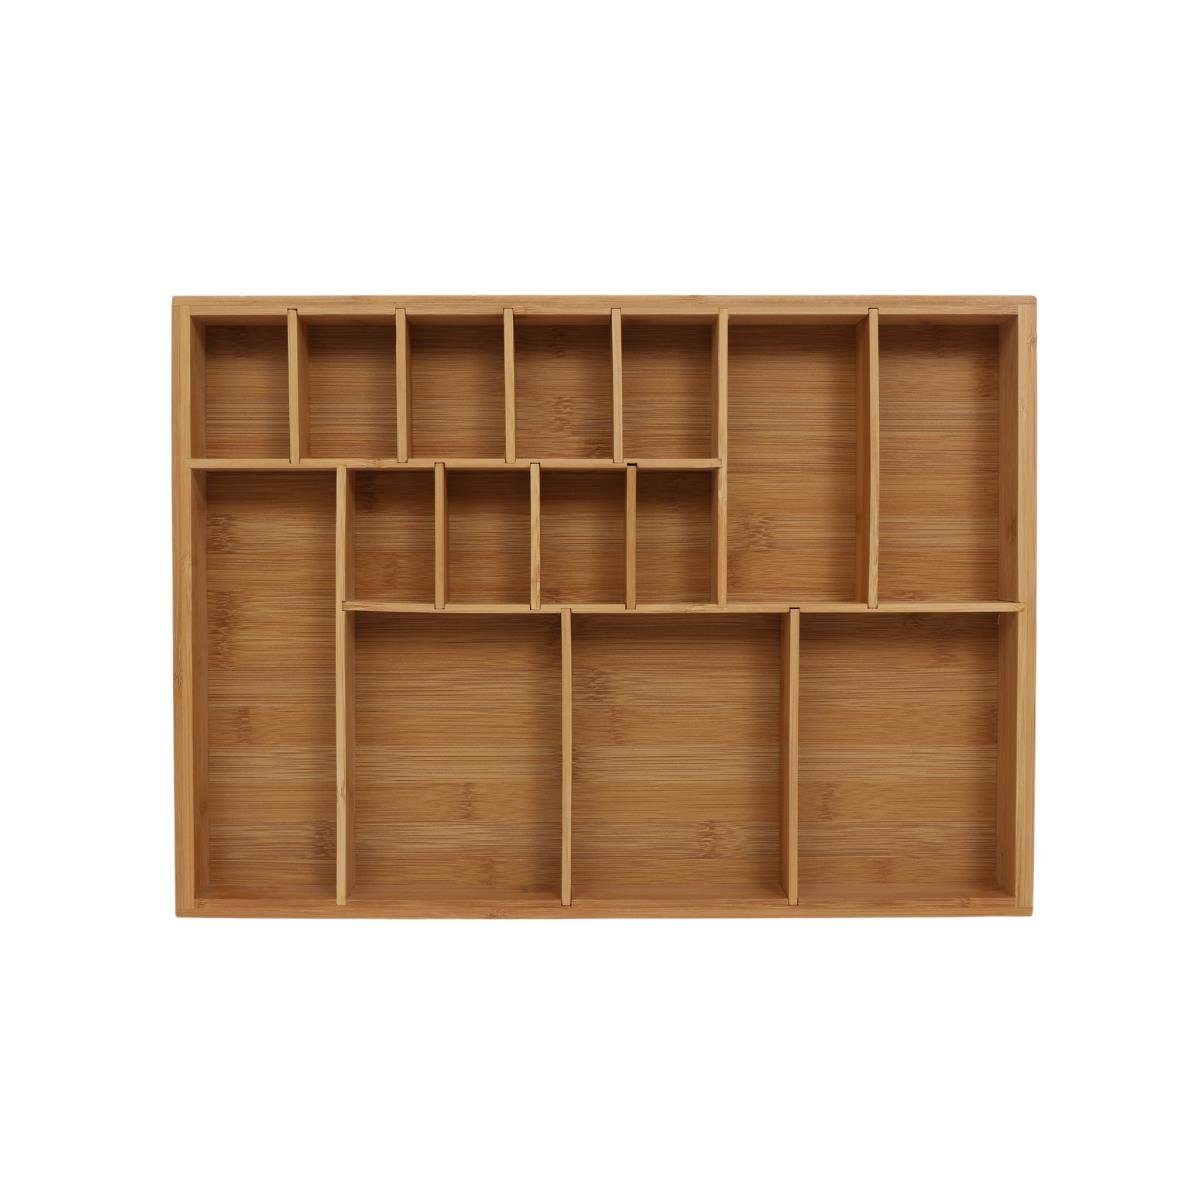 Terra Home Besteckeinsatz Bambus Organizer Schublade Besteckkasten 44x32x5 cm, Für besteck oder als Organizer